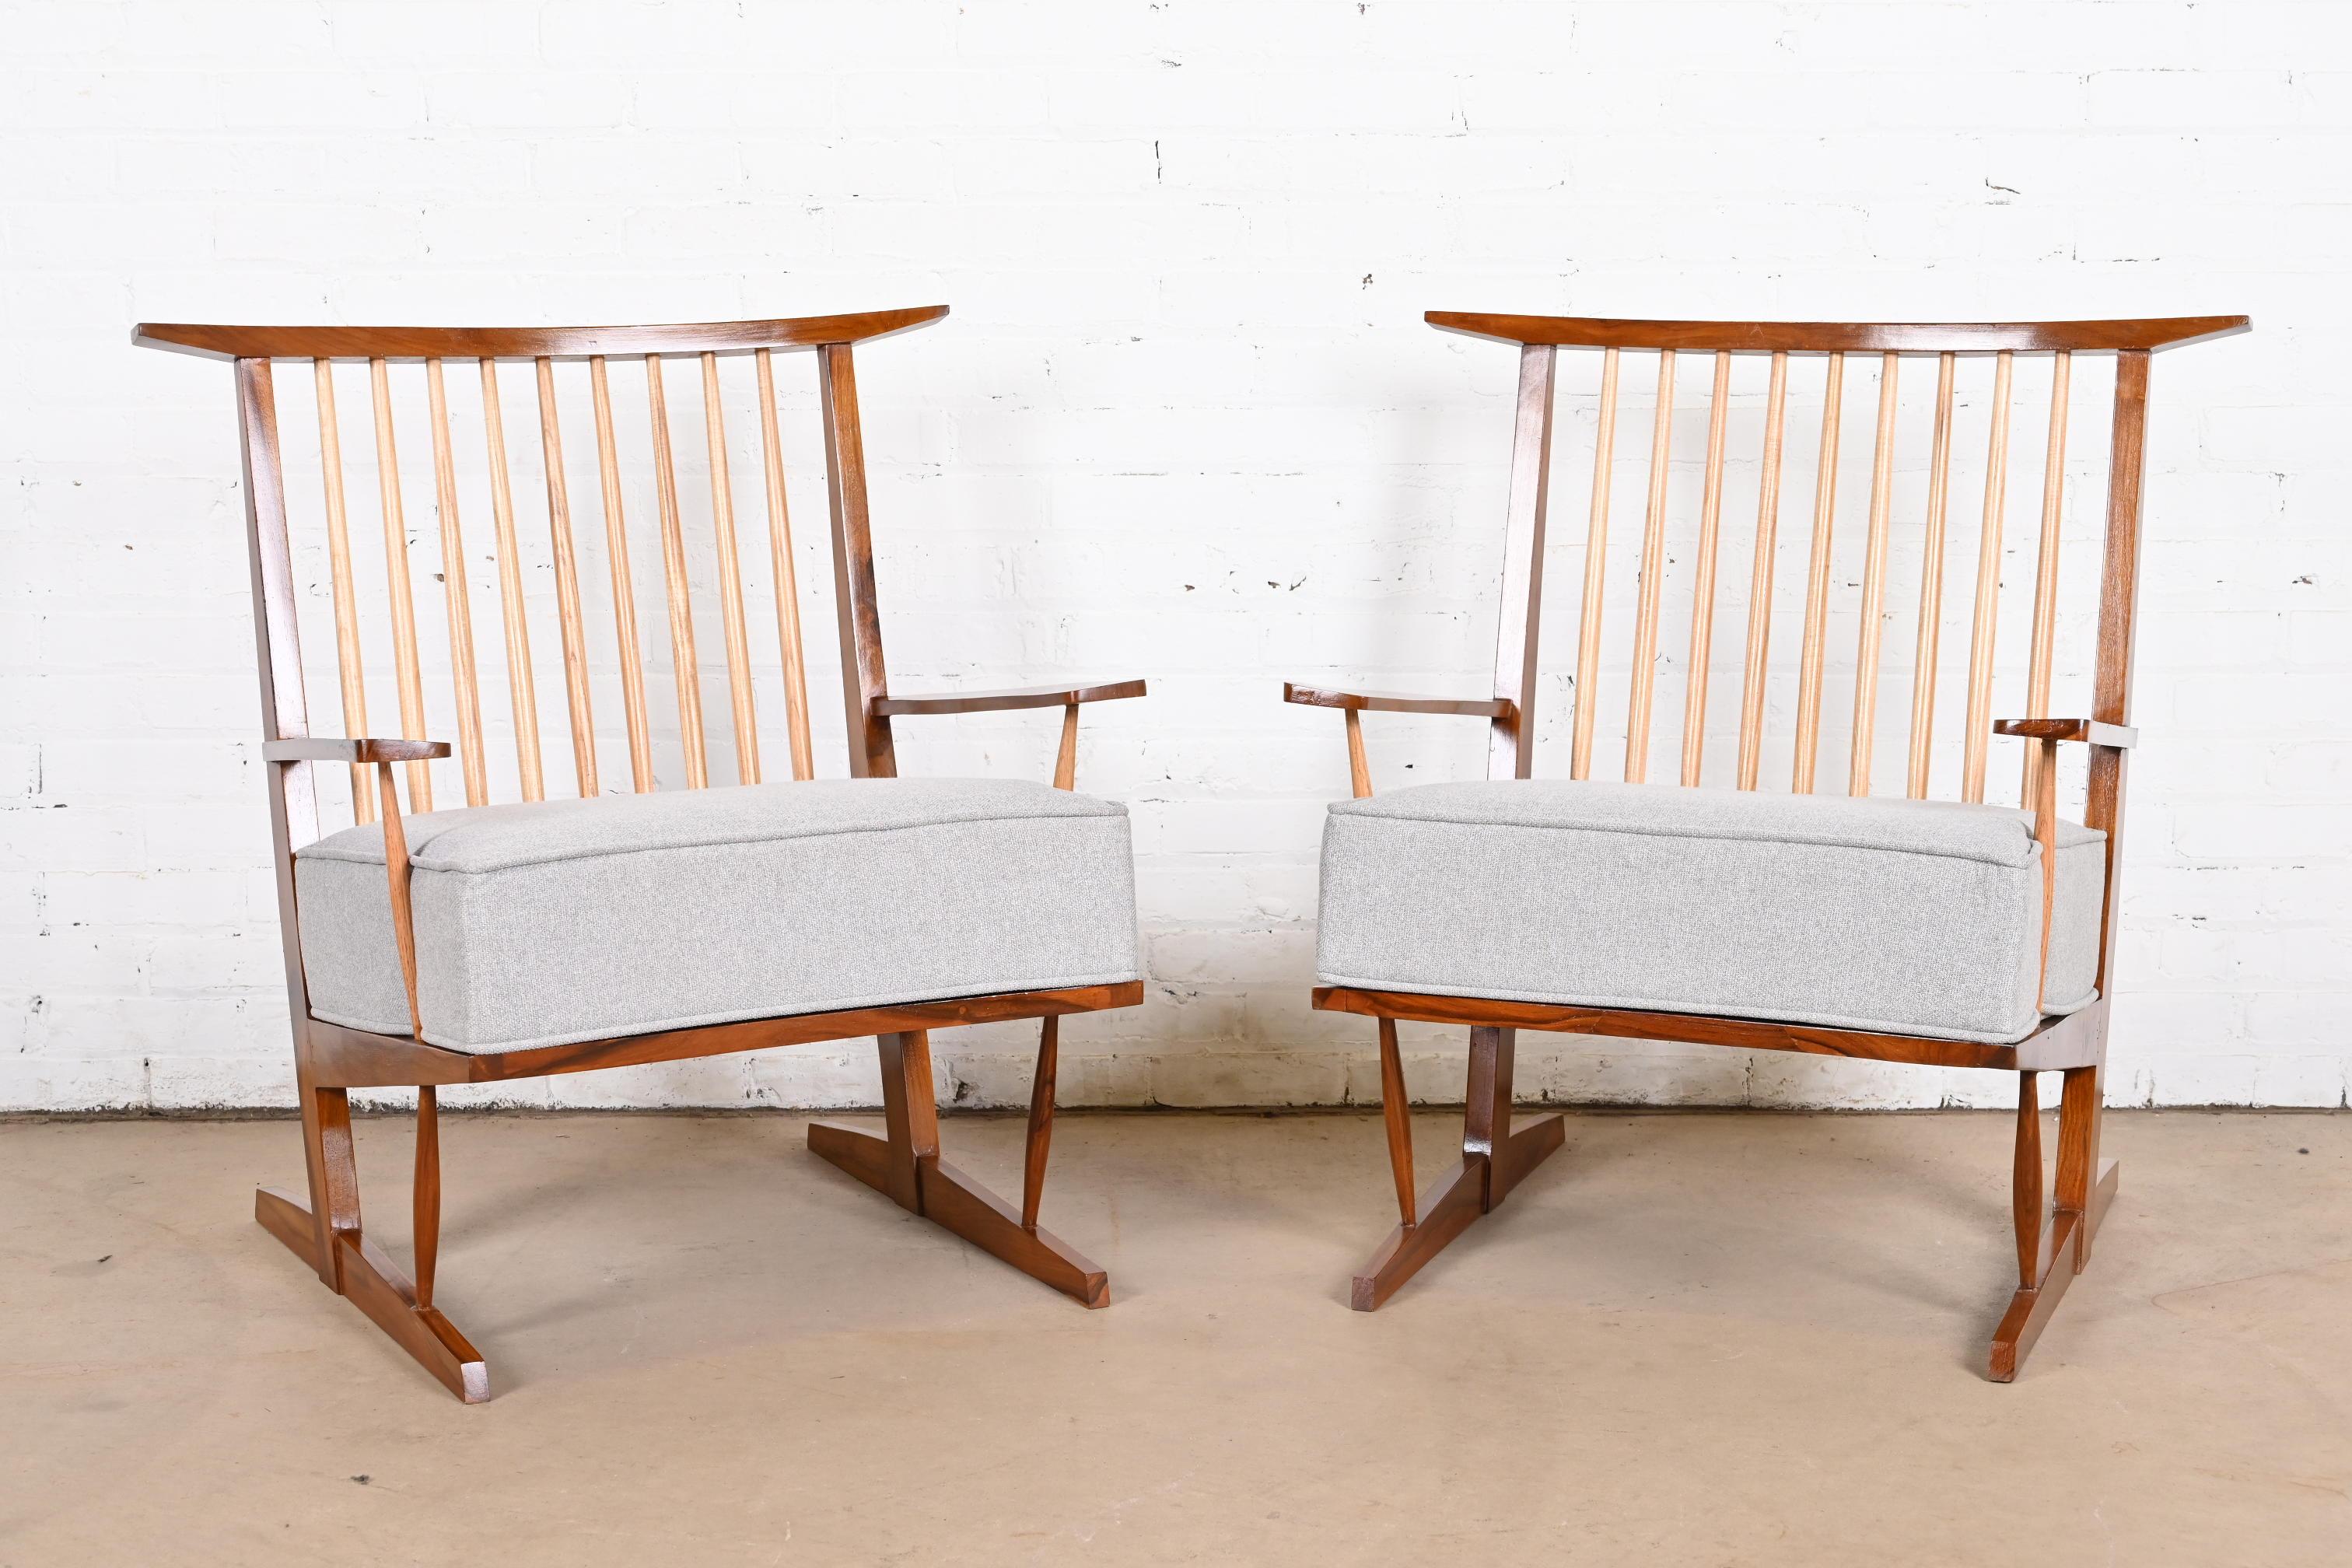 Ein außergewöhnliches Paar Organic Modern Lounge Chairs

Nach George Nakashima

USA, circa Ende des 20. Jahrhunderts

Rahmen aus geschnitztem Nussbaumholz mit kontrastierenden Spindeln aus Hickoryholz und abnehmbaren, gepolsterten Sitzkissen.

Maße: